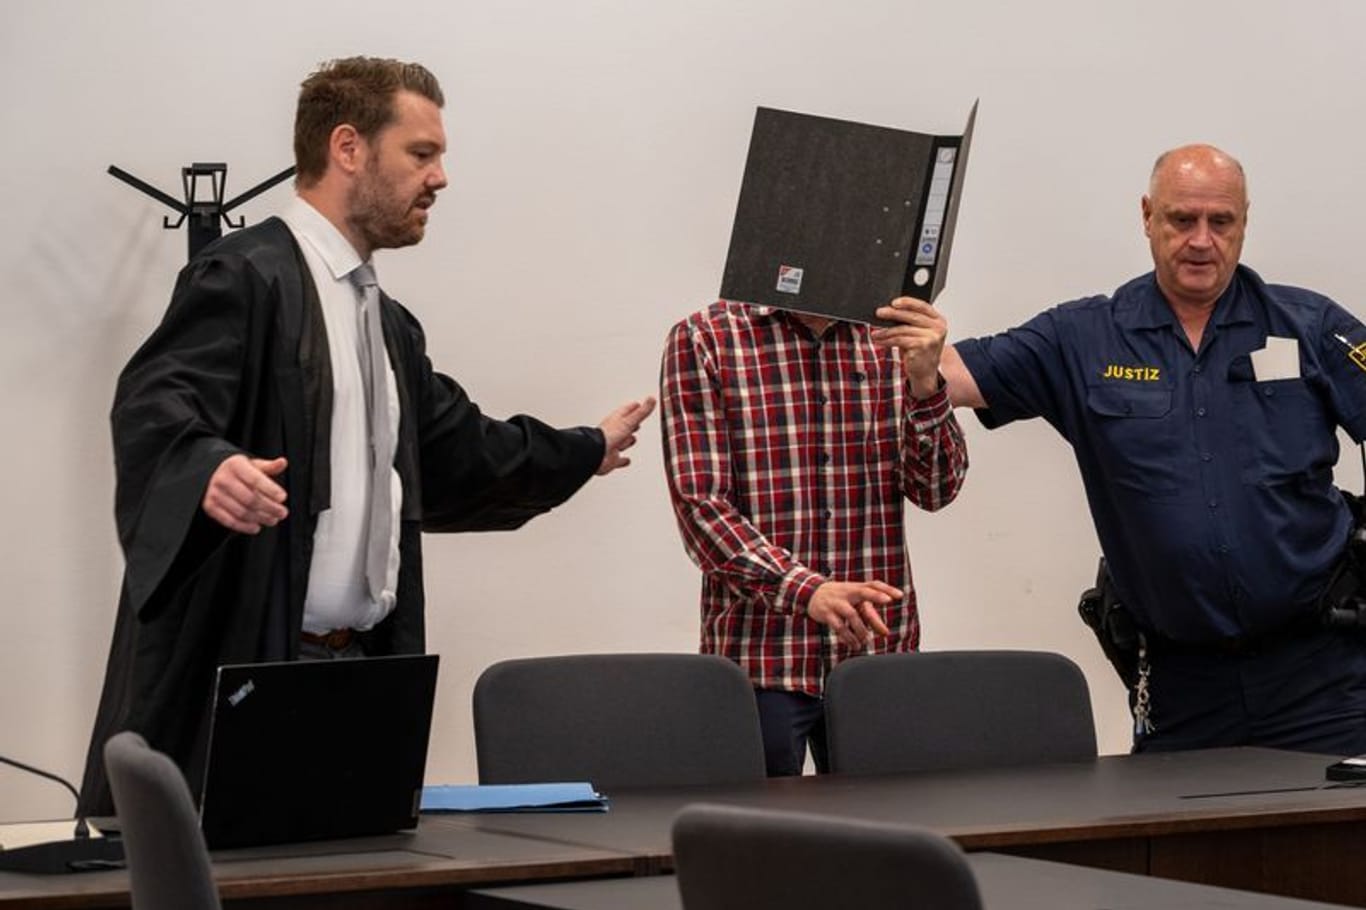 Heute ist das Urteil gegen einen 43-Jährigen gefallen: Der Angeklagte wird von einem Justizbeamten und seinem Rechtsverteidiger zu seinem Sitzplatz im Strafjustizzentrums Nürnberg gewiesen.